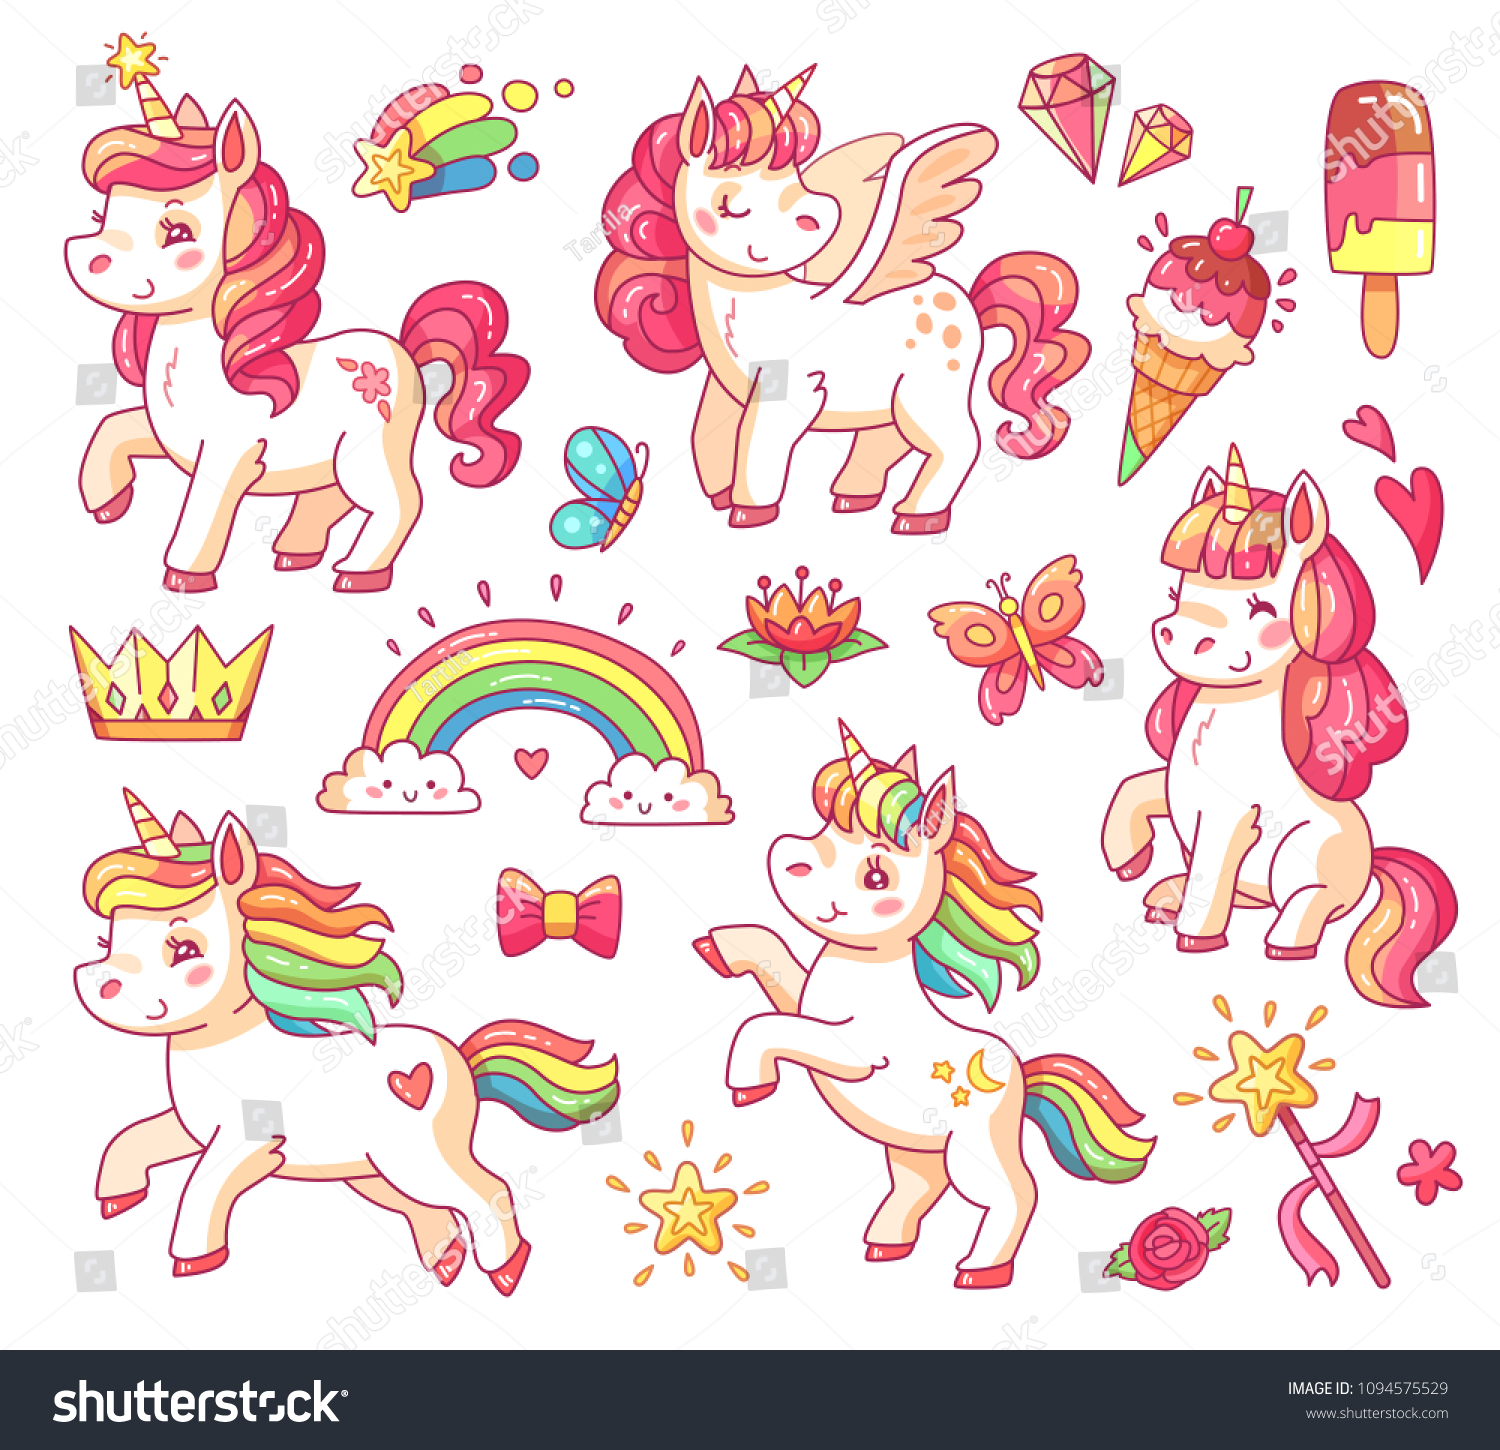 かわいいおとぎ話のピンクの空飛ぶ虹のペガサス シールのベビーユニコーンで 金星と甘いアイスクリームがついています 魔法のおとぎ話の小さなポニー空想ユニコーンの漫画のベクターイラストセット のベクター画像素材 ロイヤリティフリー